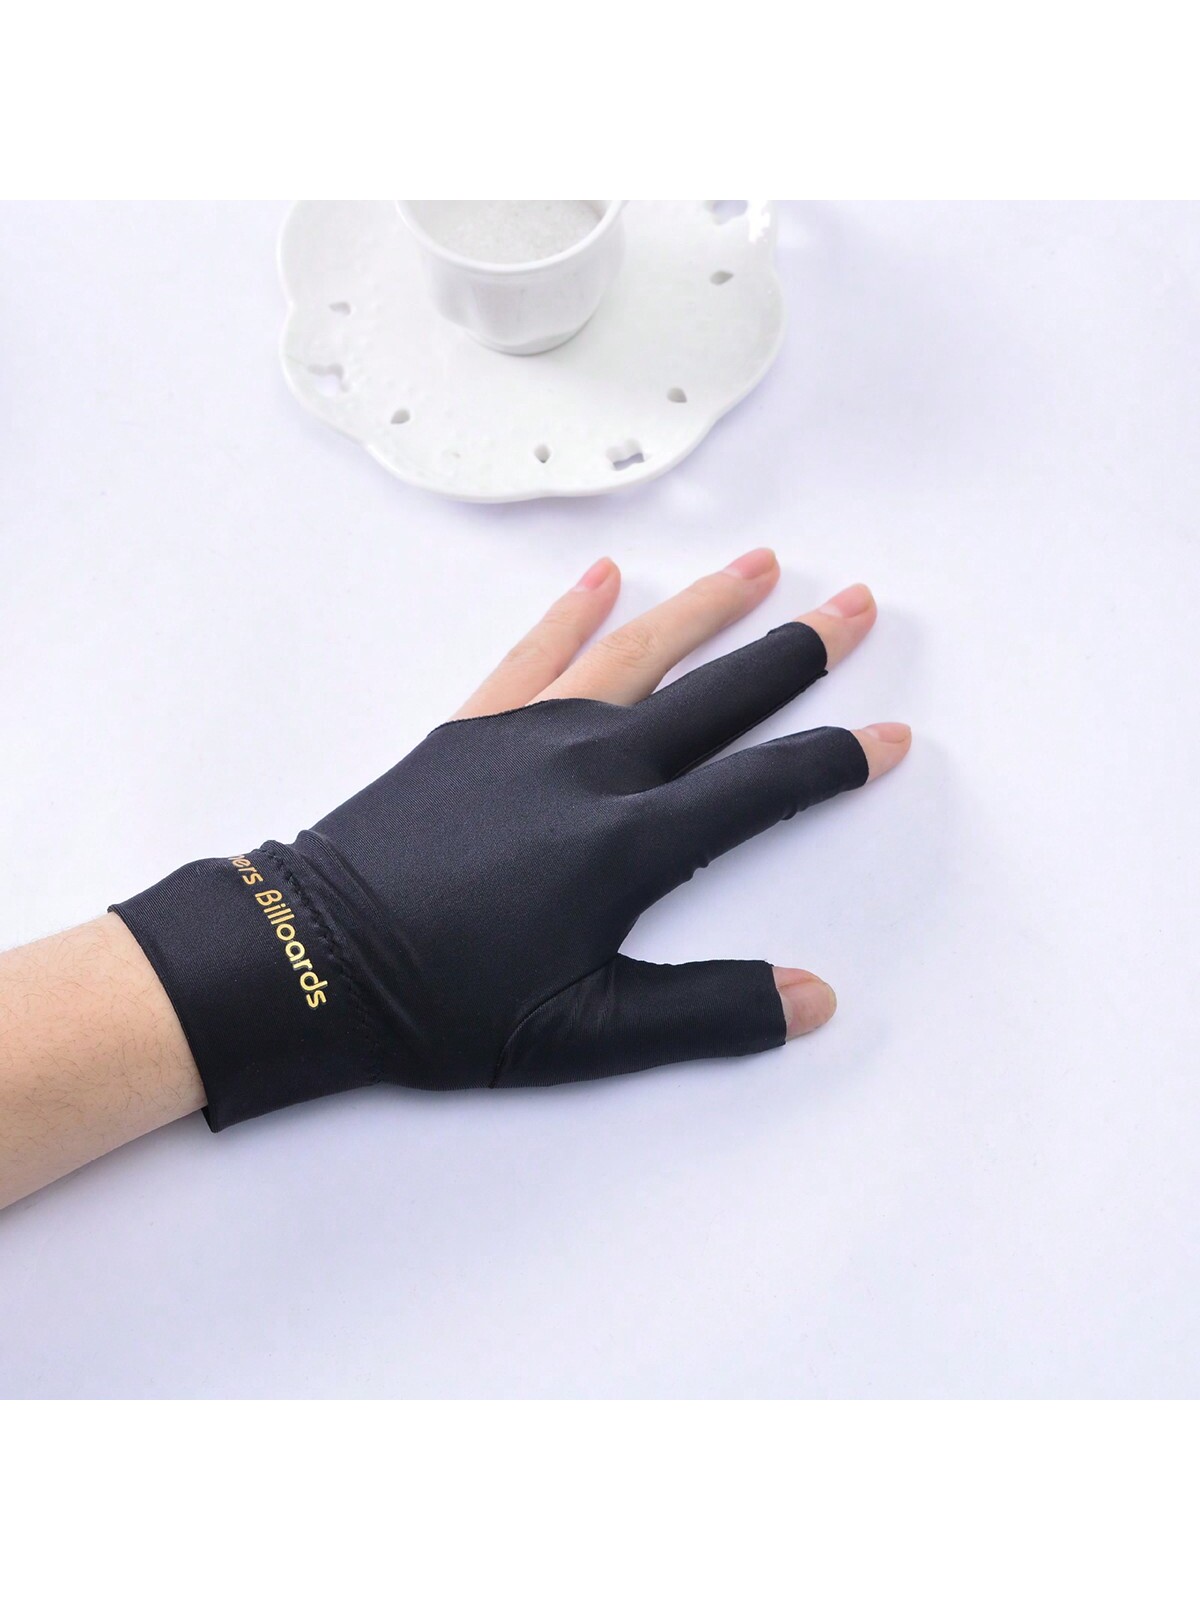 перчатки одинарные с начесом размер 10 10 шт. черные унисекс 3-пальцевые бильярдные перчатки со спандексом, черный